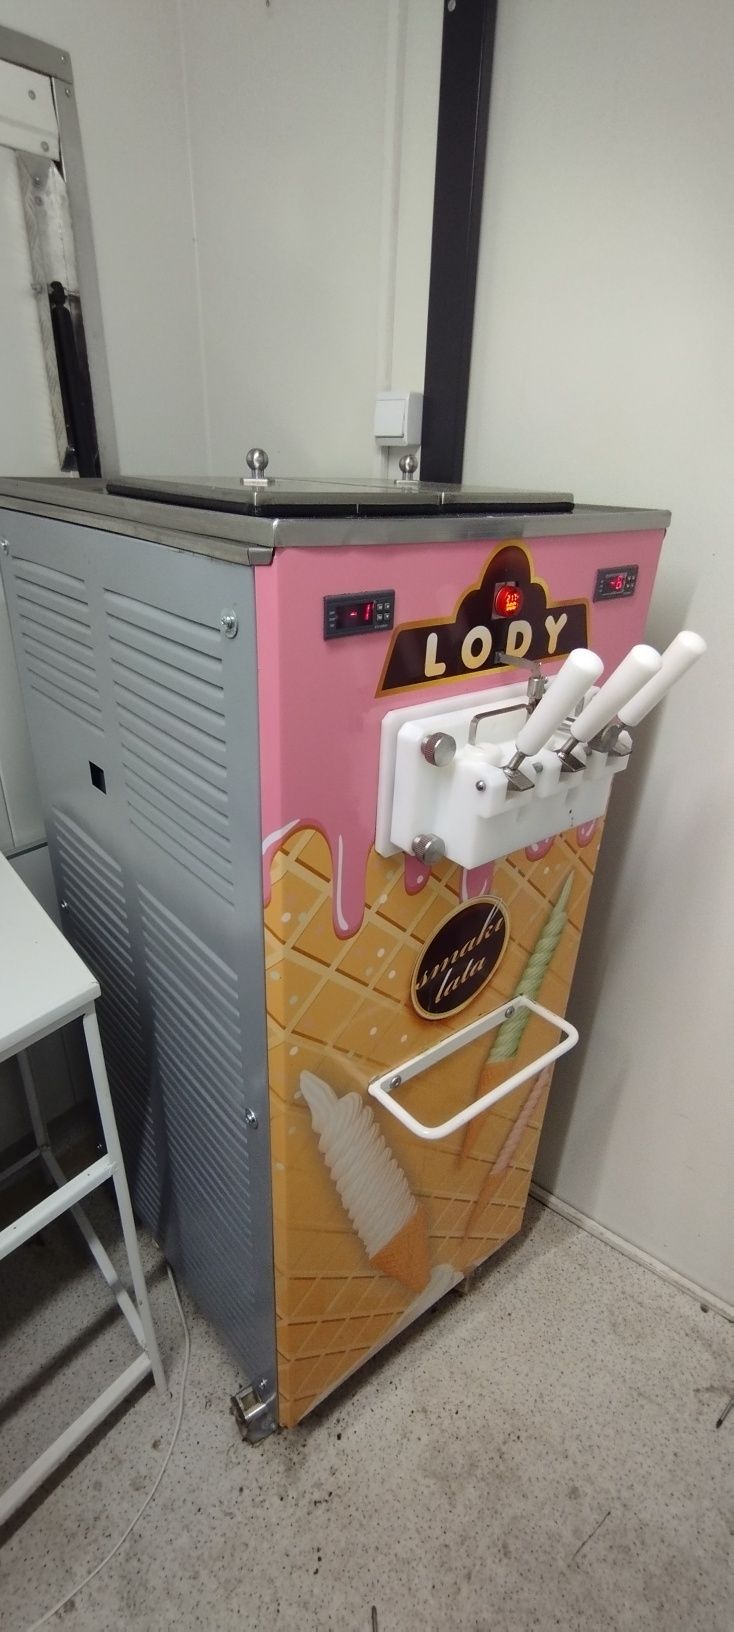 Maszyna do lodów świderków